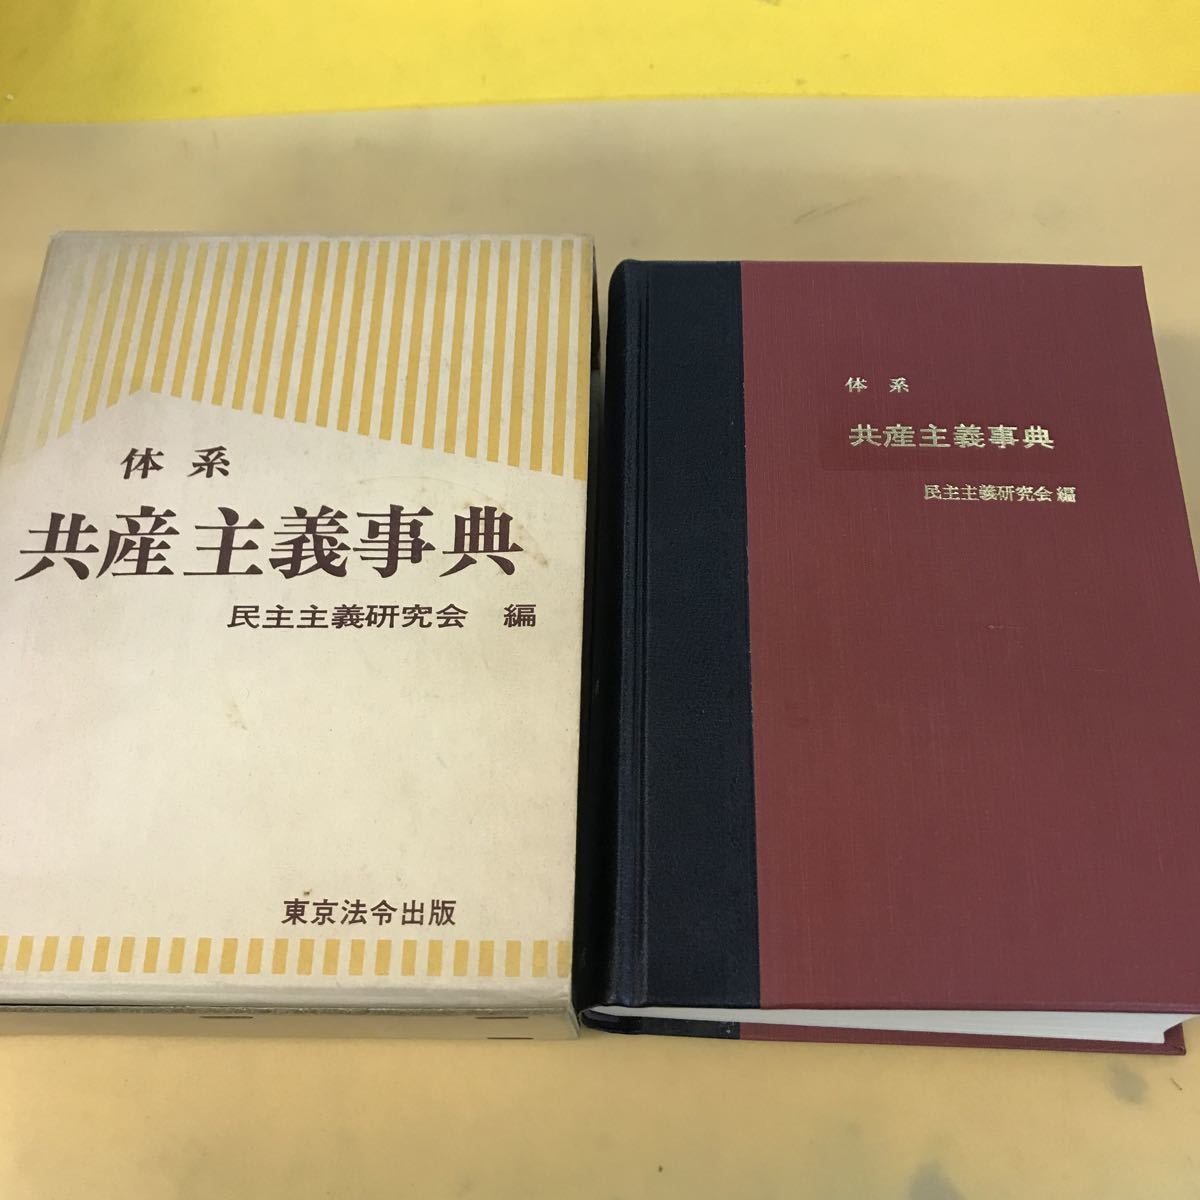 E33-005 大系 共産主義事典 民主主義研究会編 東京法令出版